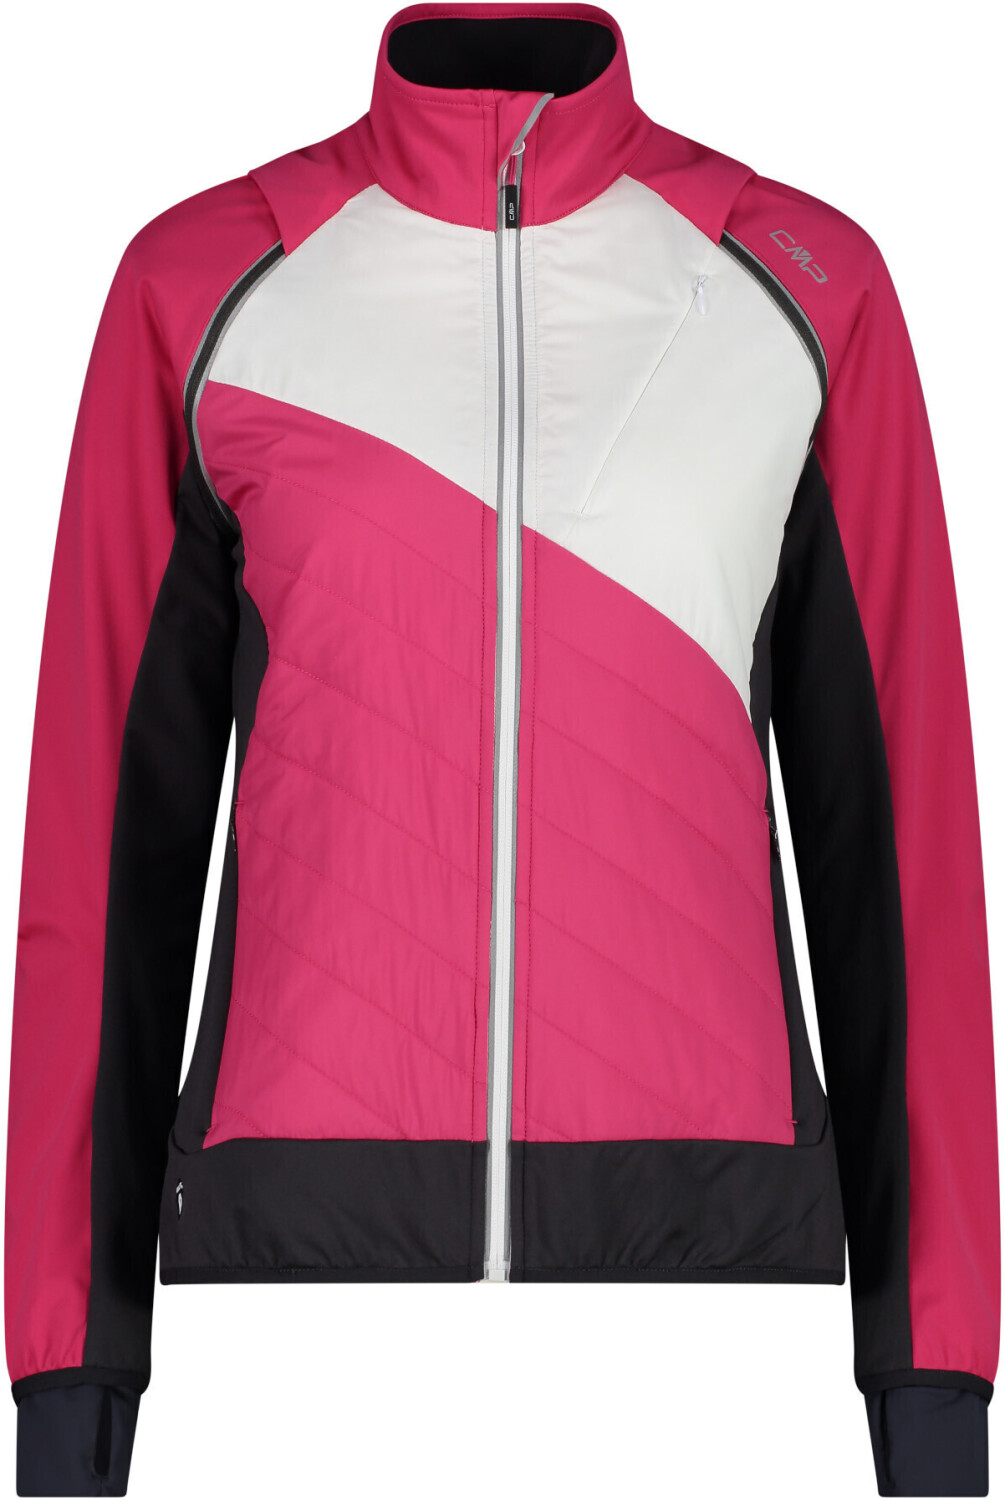 | (30A2276) idealo Sleeves fucsia CMP Compara Jacket precios 69,00 with desde Women\'s en € Hybrid Removable